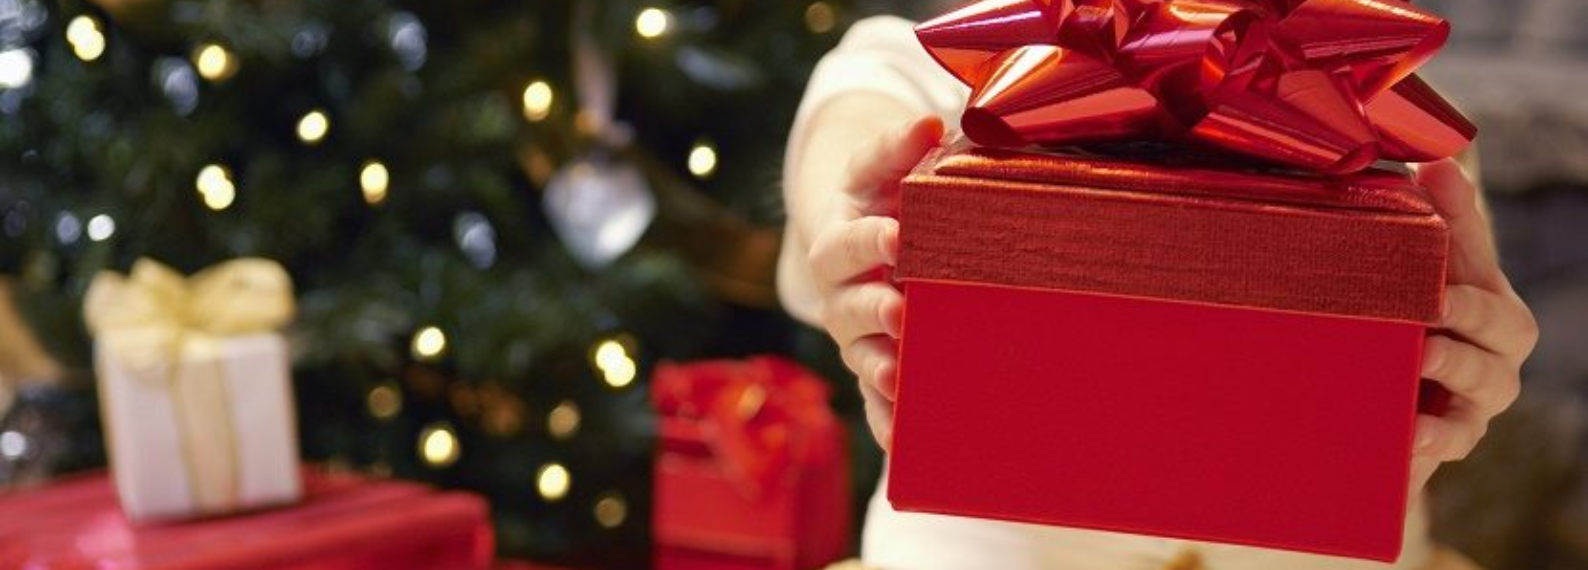 5 ideas para dar regalos perfectos esta navidad